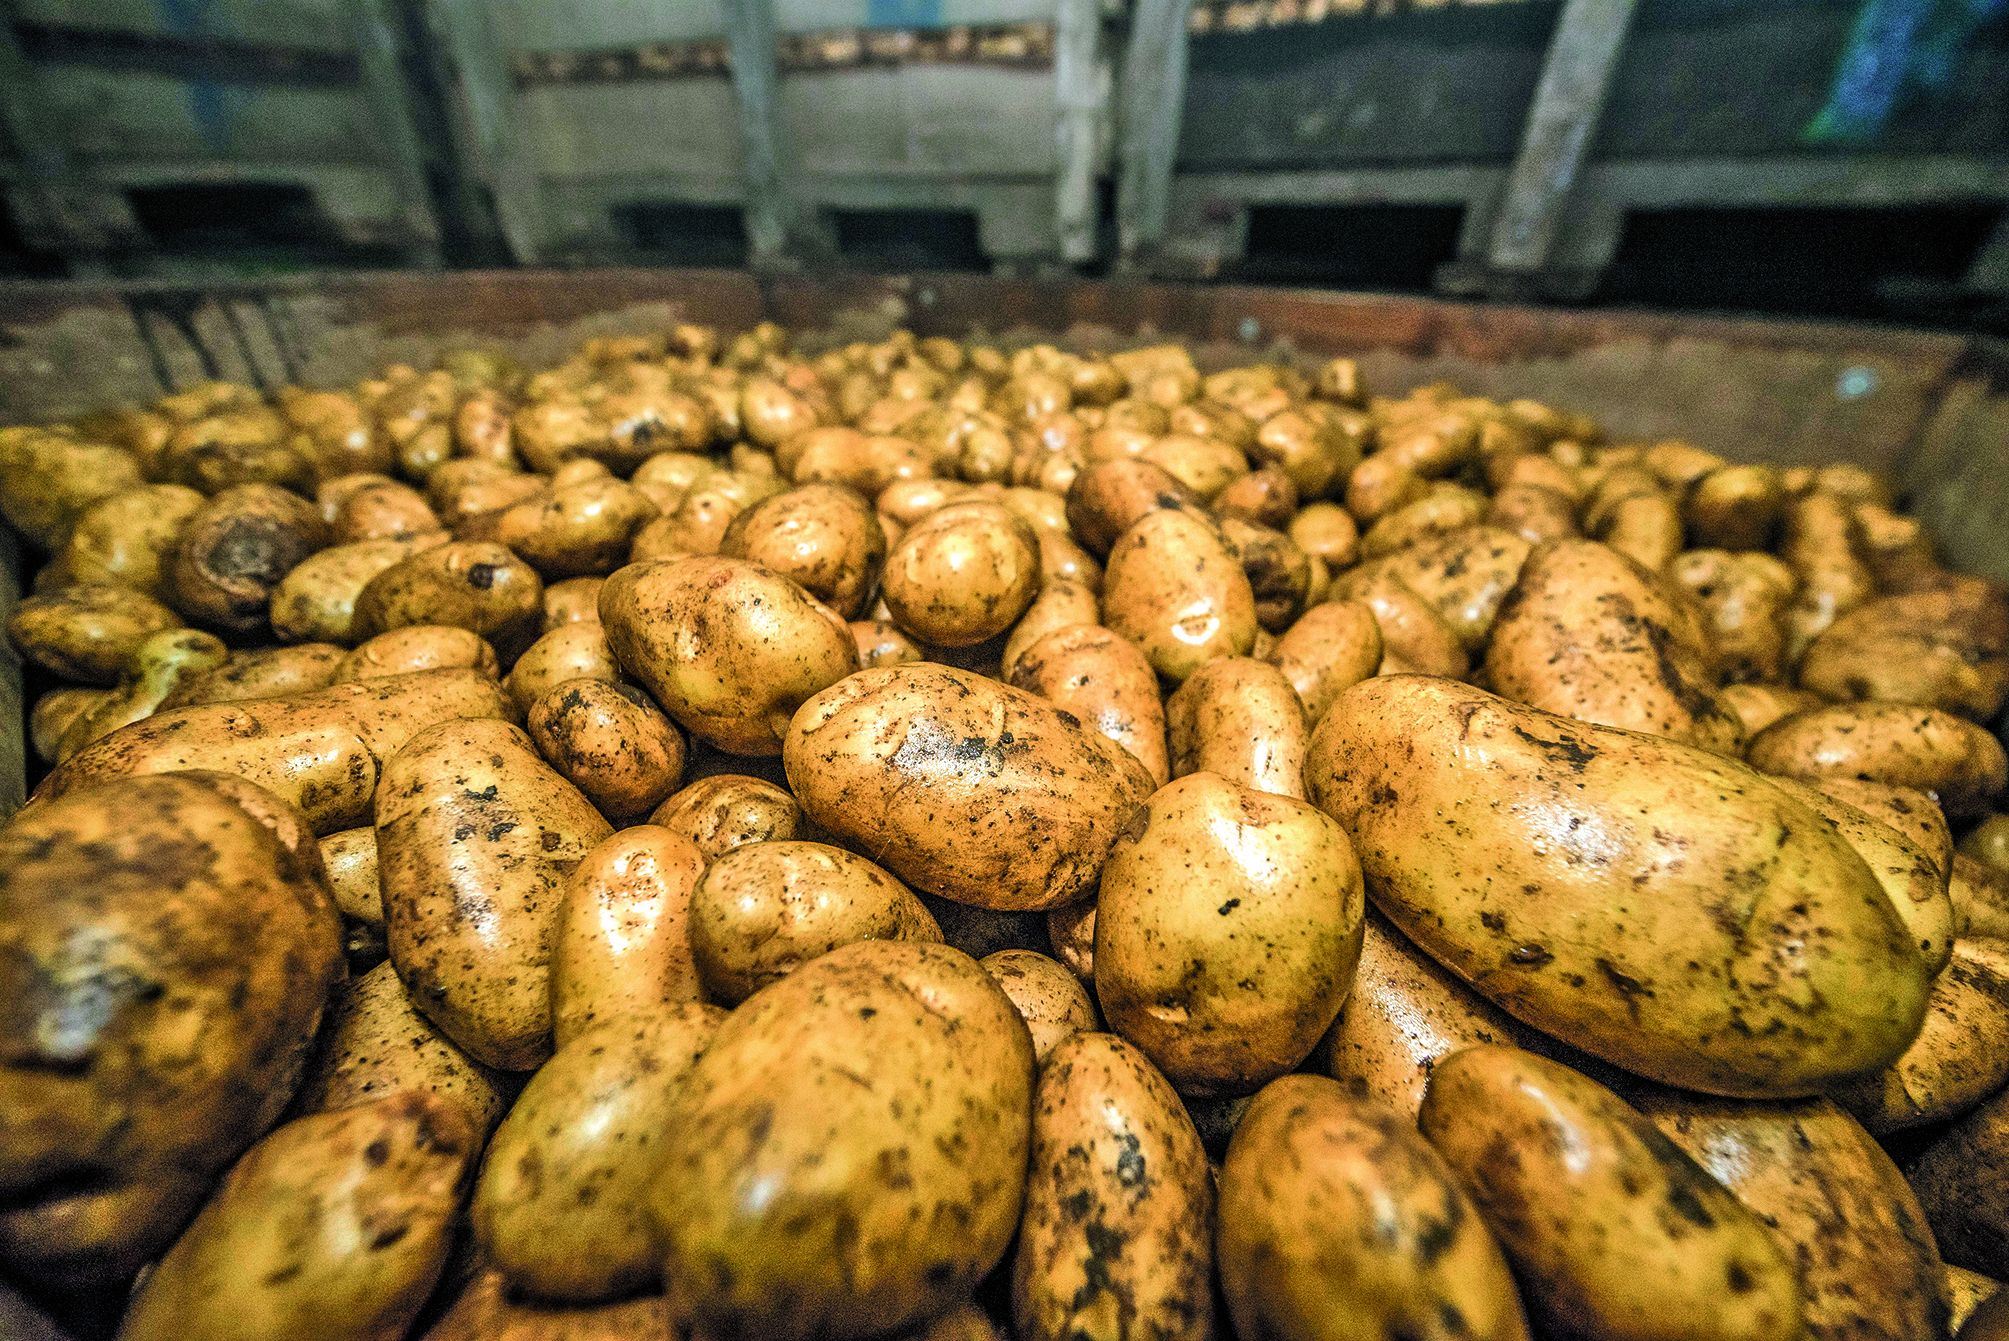 Dans les chambres froides de Ducos, les patates sont gardées à 6 °C en moyenne, et brumisées. Dans certains cas, un anti-germinatoire « bio » à l’huile de menthe, en test, est pulvérisé.